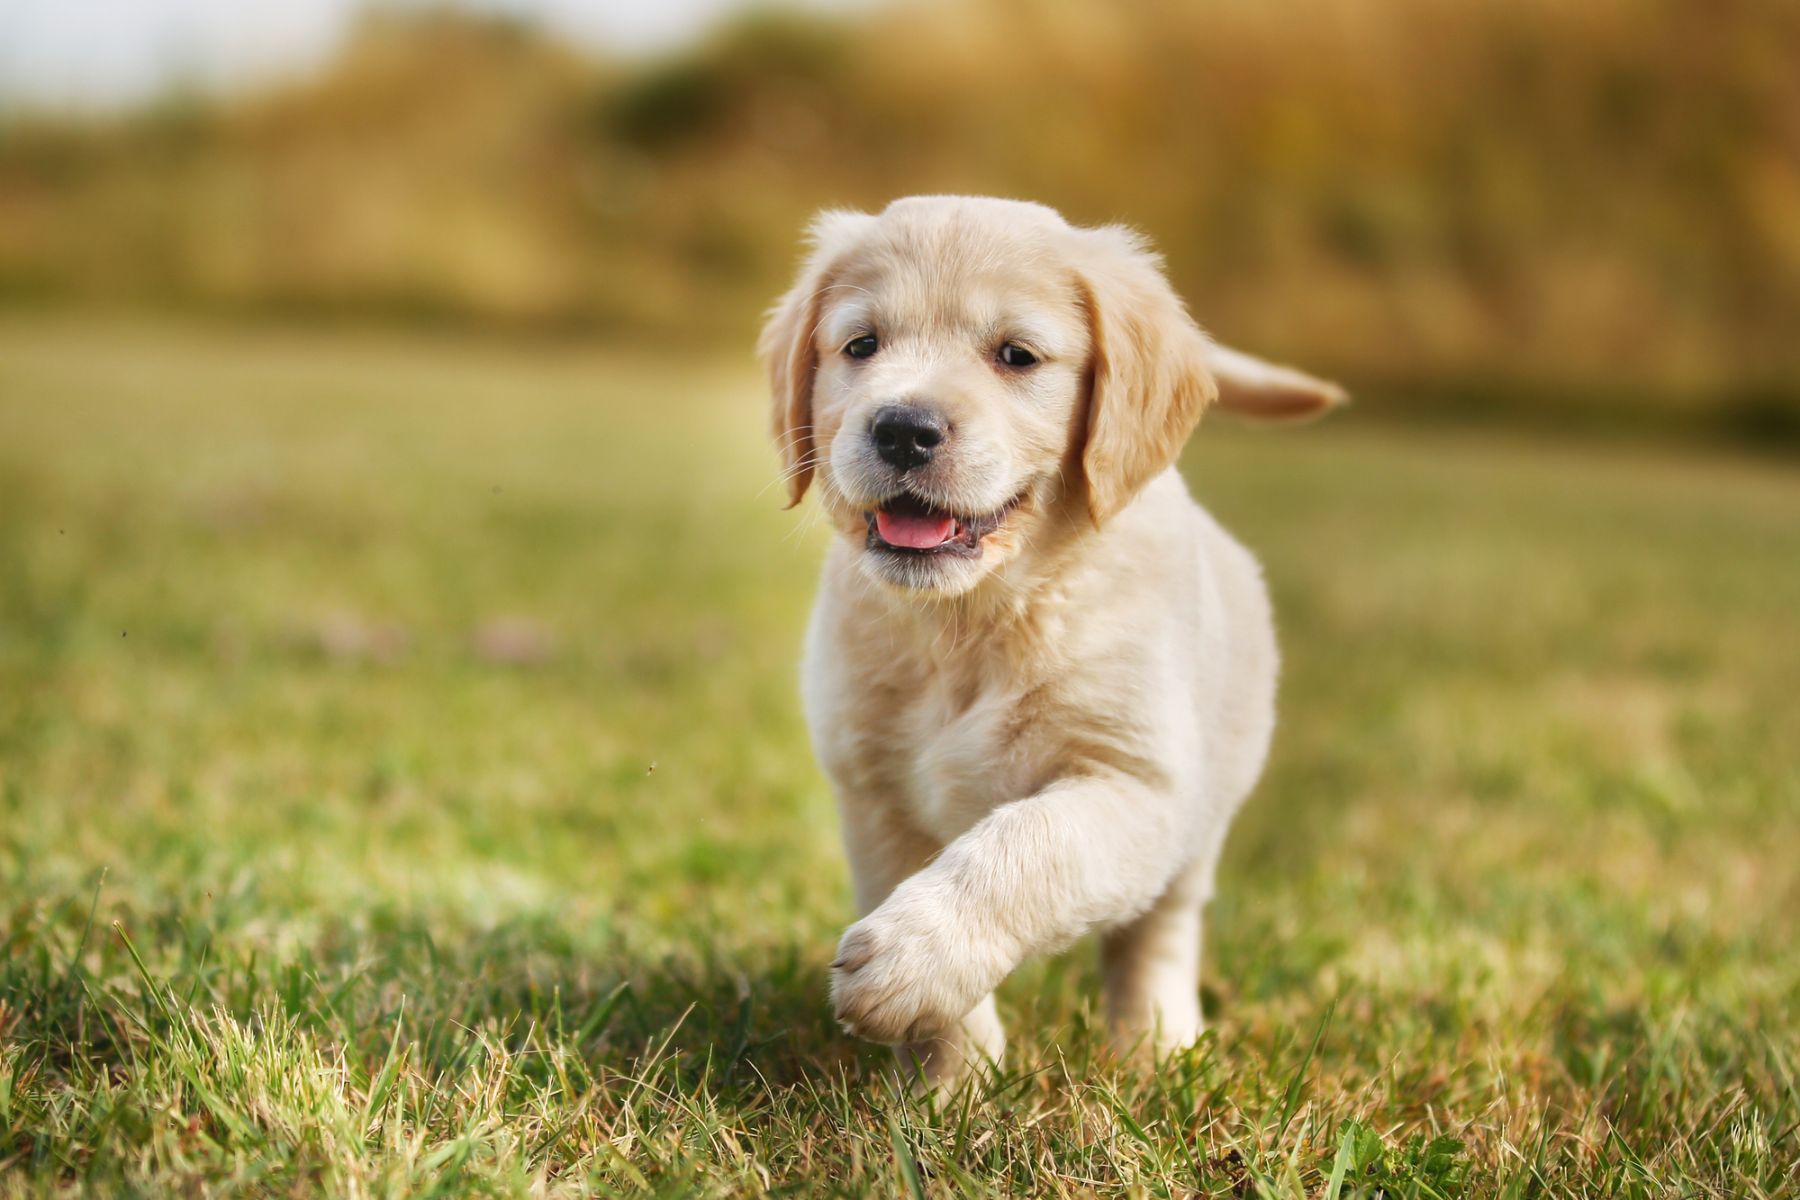 Puppy running on grass